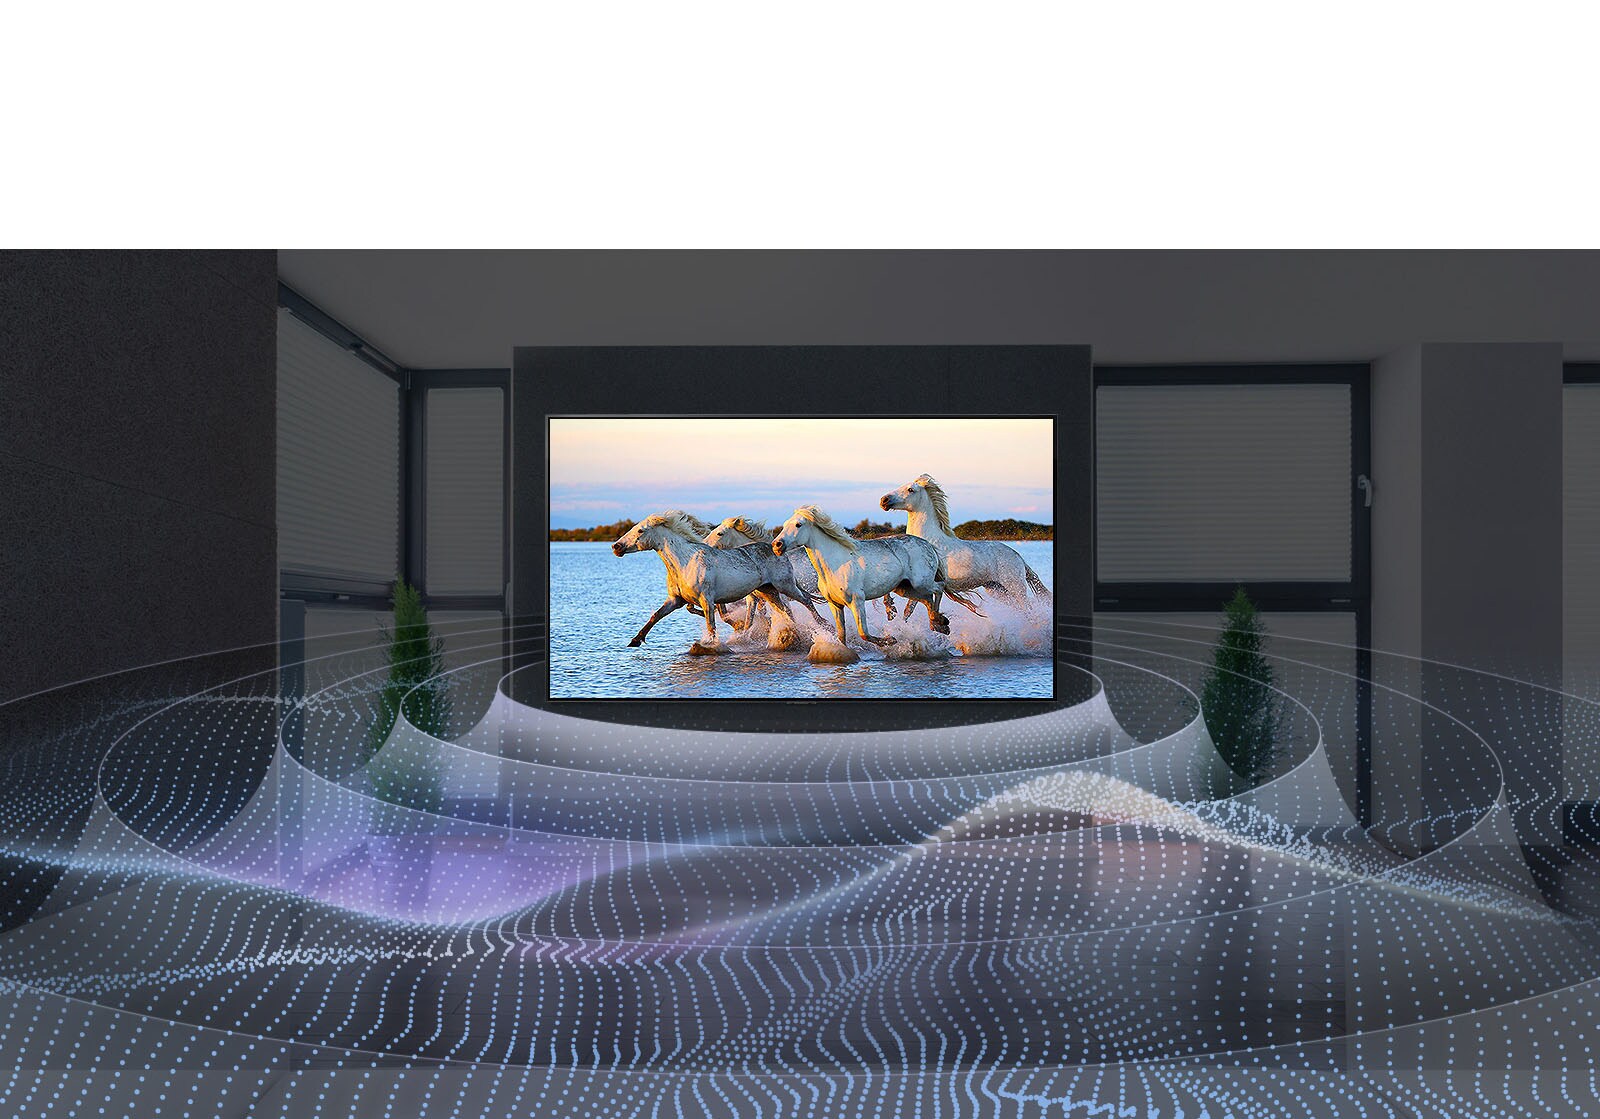 L’écran du téléviseur entouré d’ondes sonores affiche quatre chevaux blancs qui galopent dans l’eau.